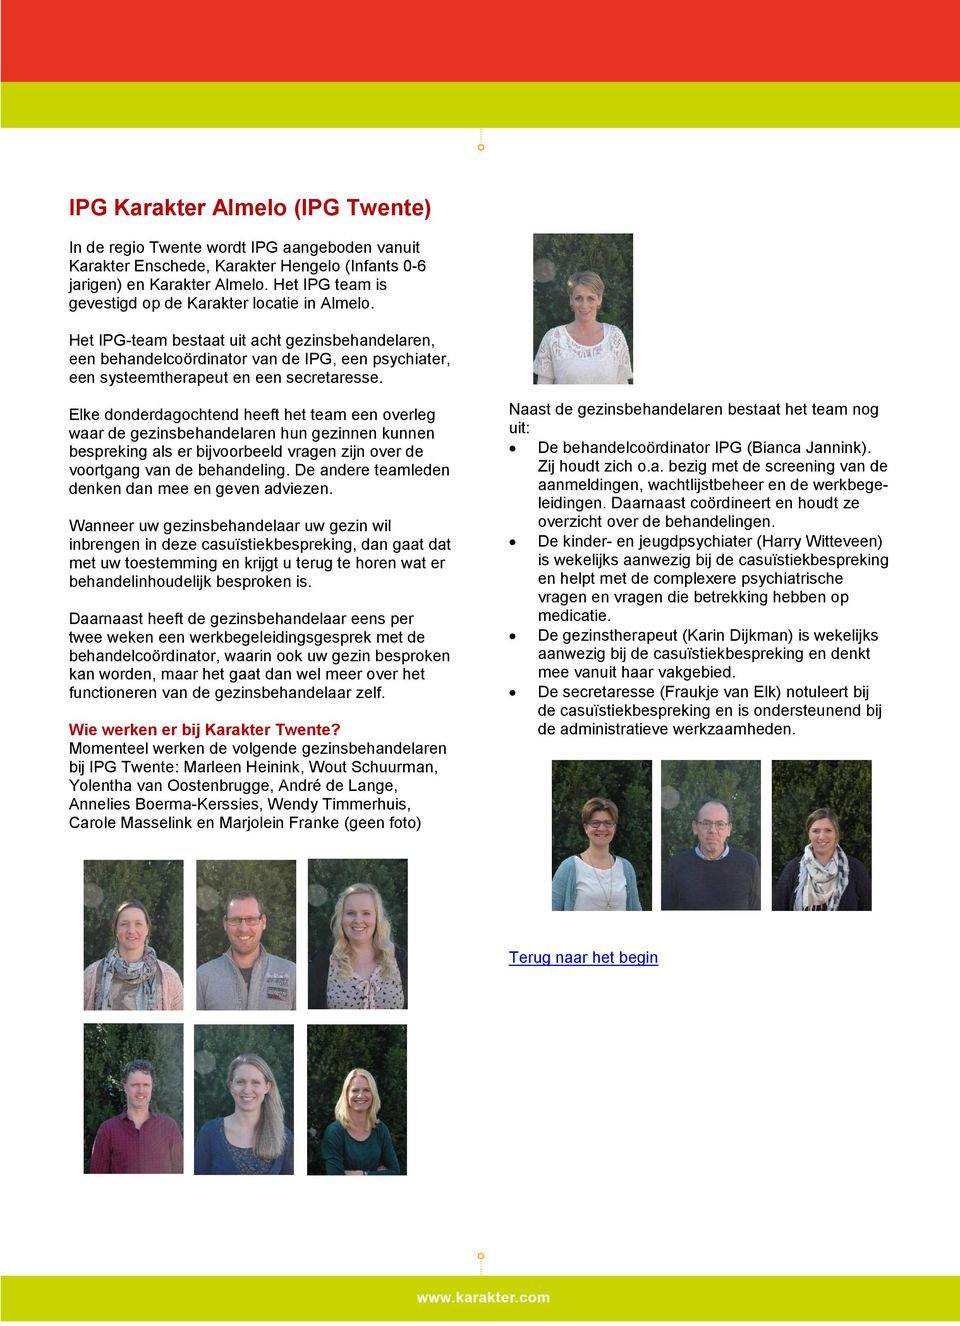 Het IPG-team bestaat uit acht gezinsbehandelaren, een behandelcoördinator van de IPG, een psychiater, een systeemtherapeut en een secretaresse.